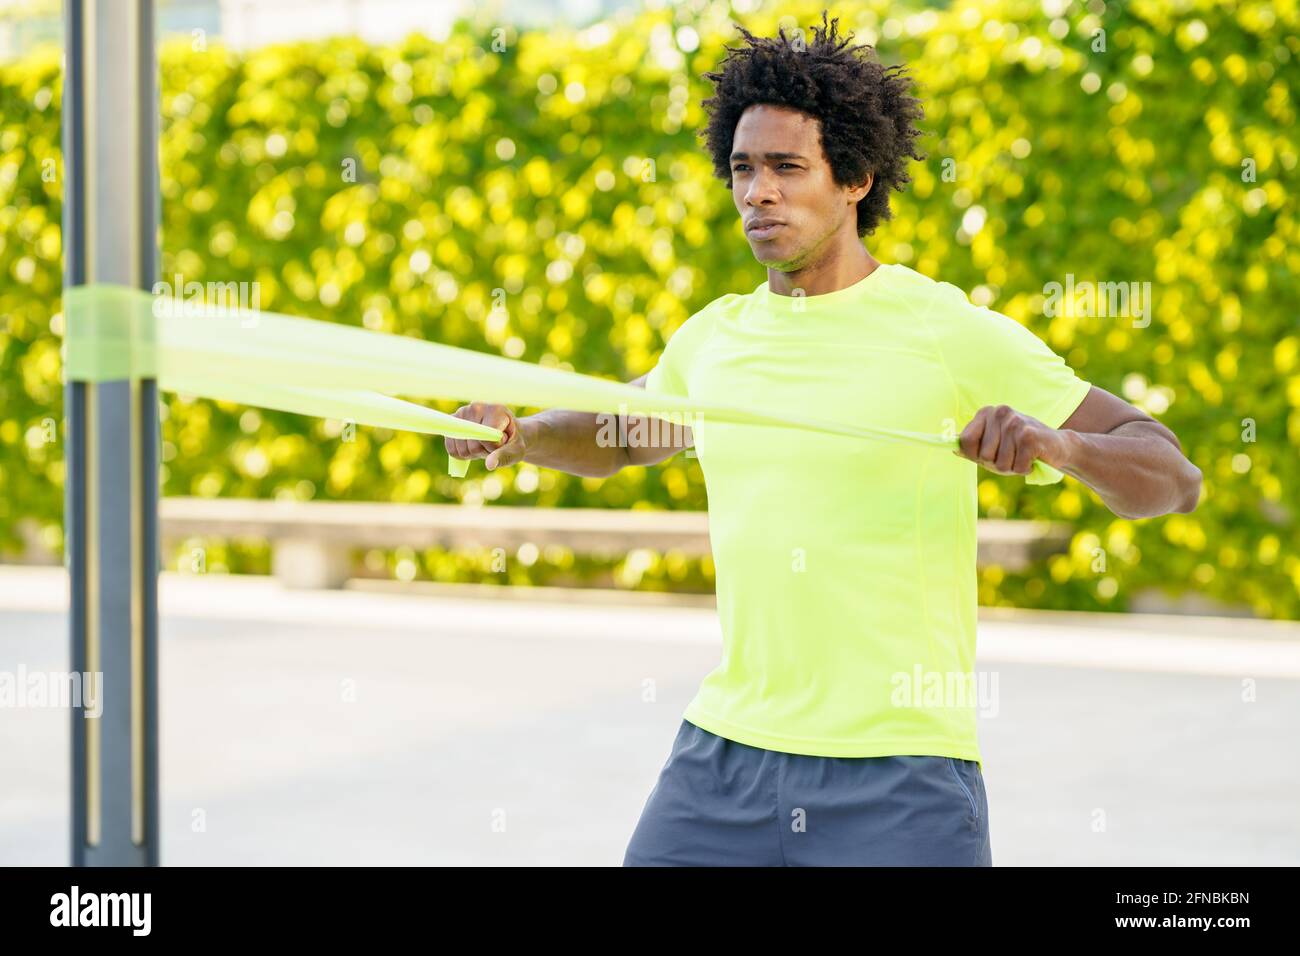 Hombre negro haciendo ejercicio con banda elástica al aire libre Foto de stock